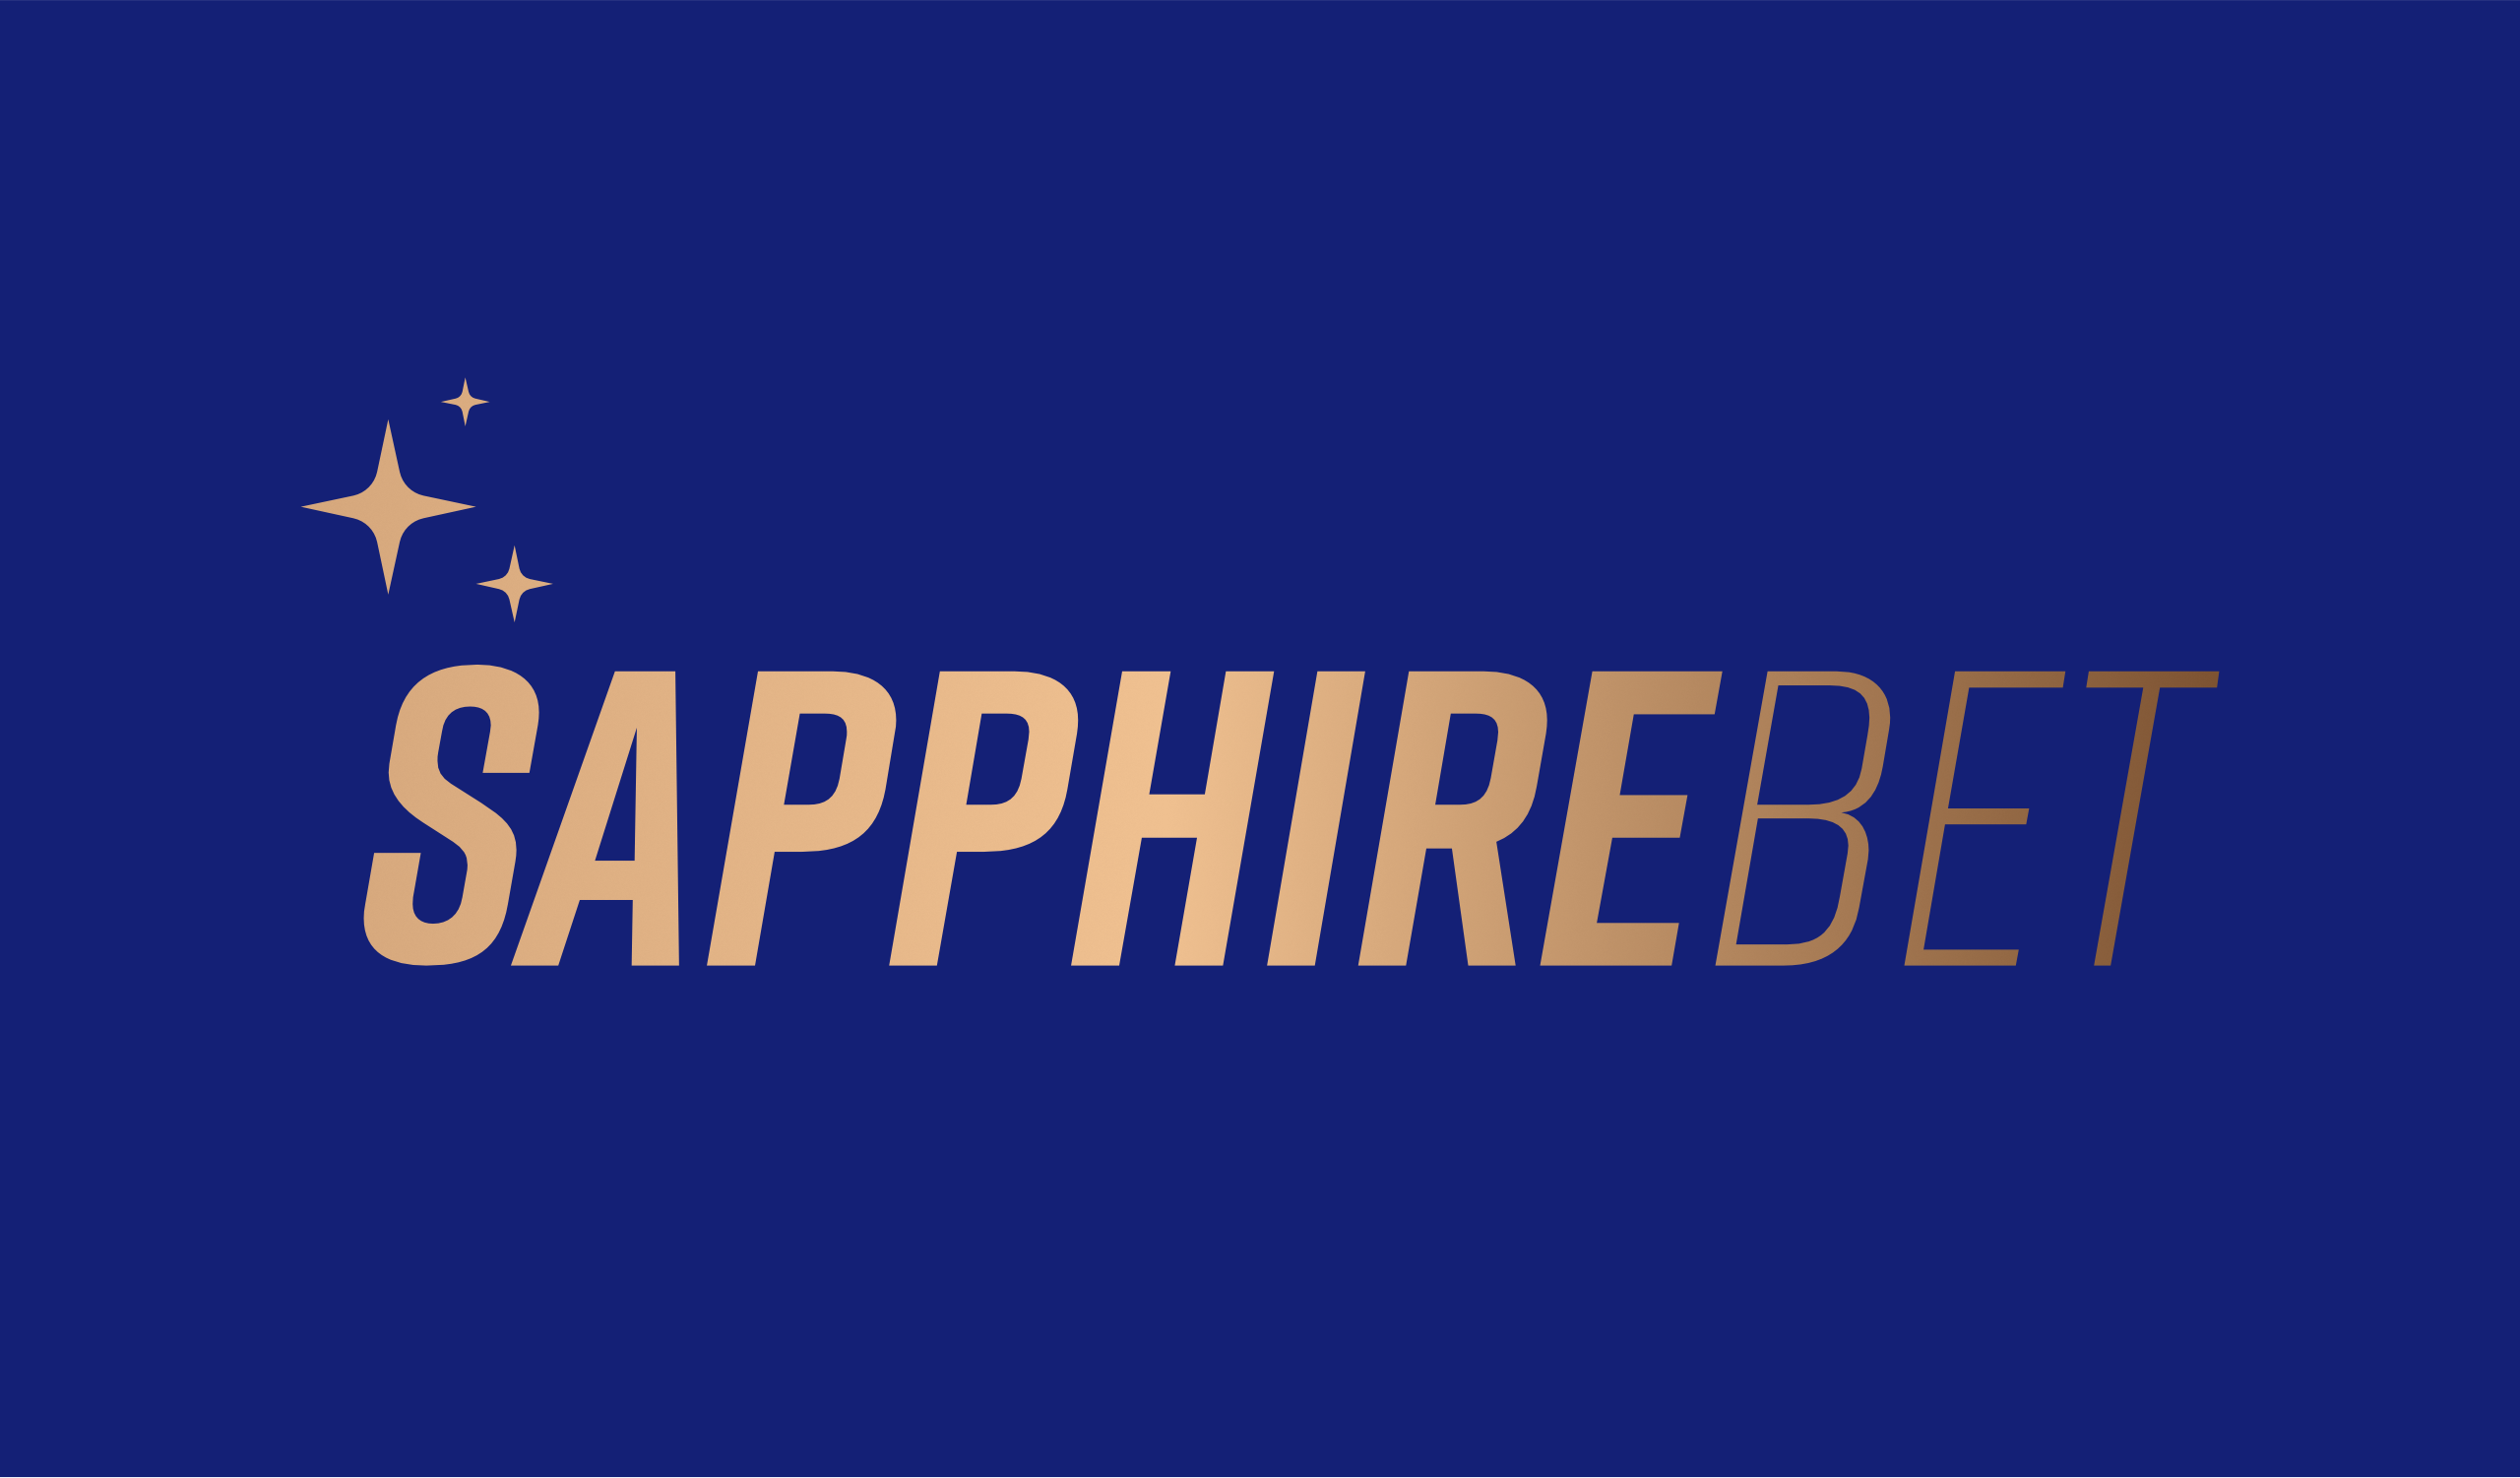 Aposte na Sapphire Bet